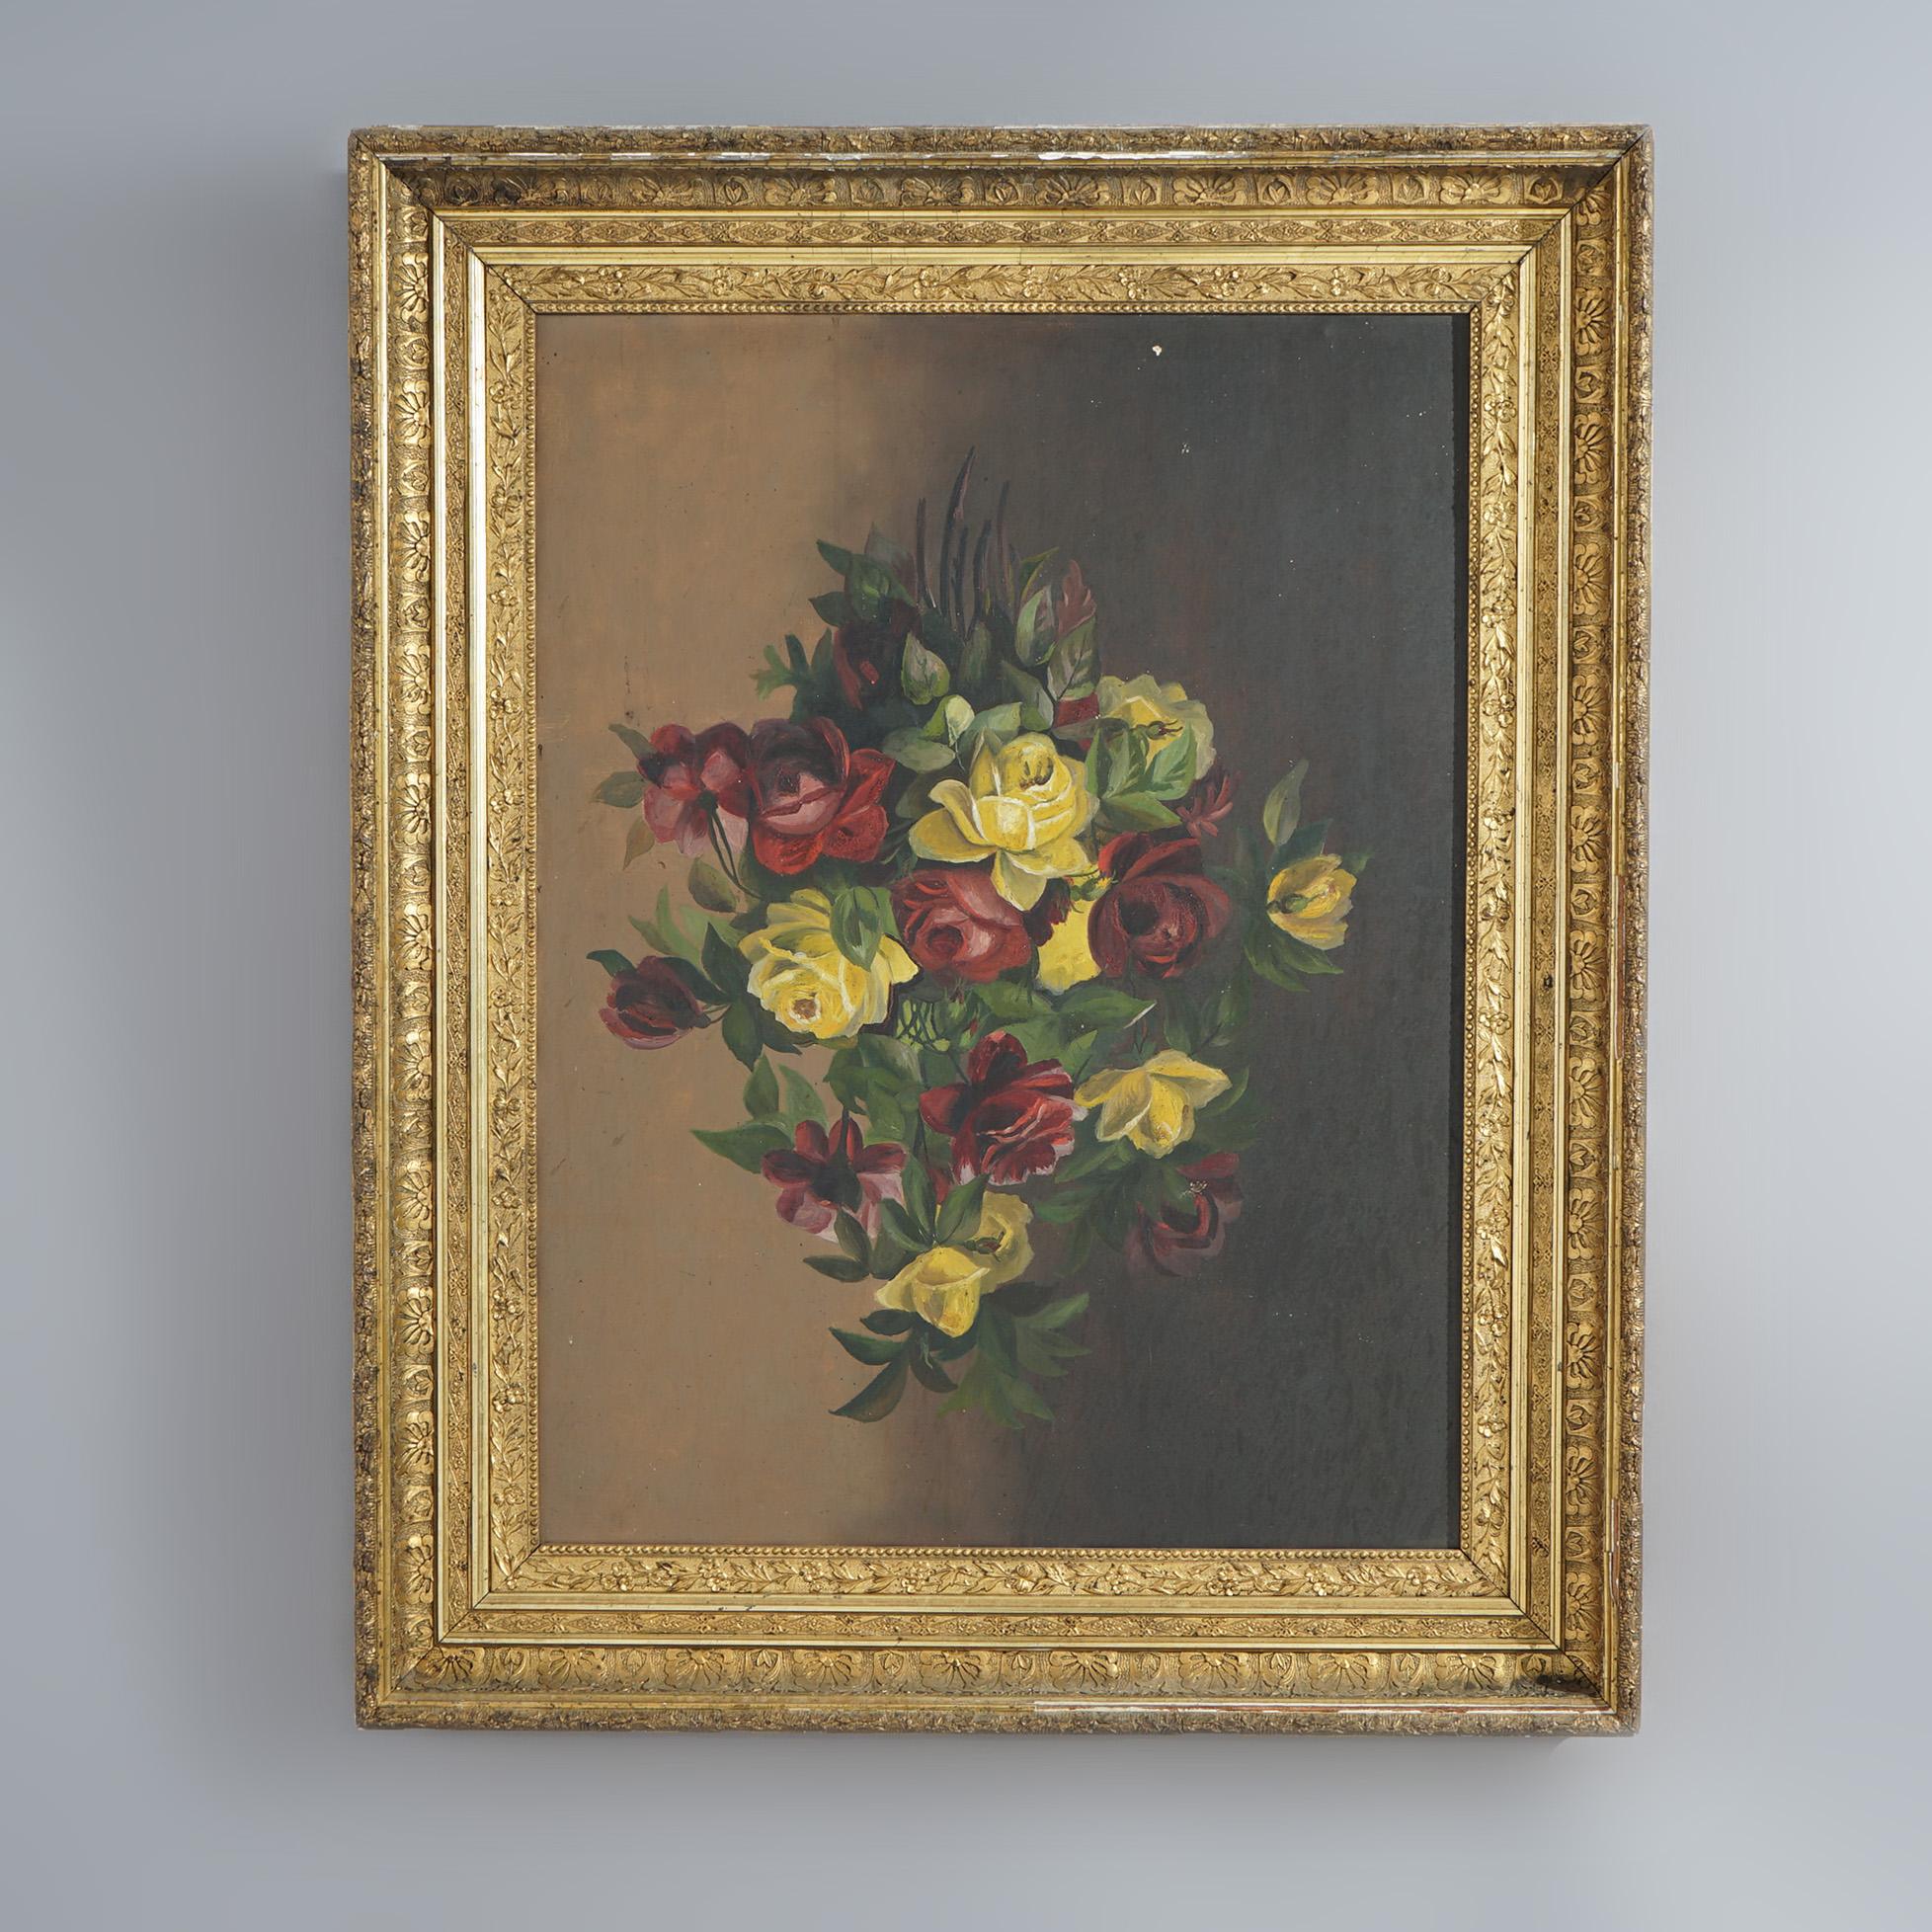 Un tableau ancien offre une nature morte à l'huile sur toile avec des roses, assis dans un cadre en bois doré, c1890

Dimensions - 40